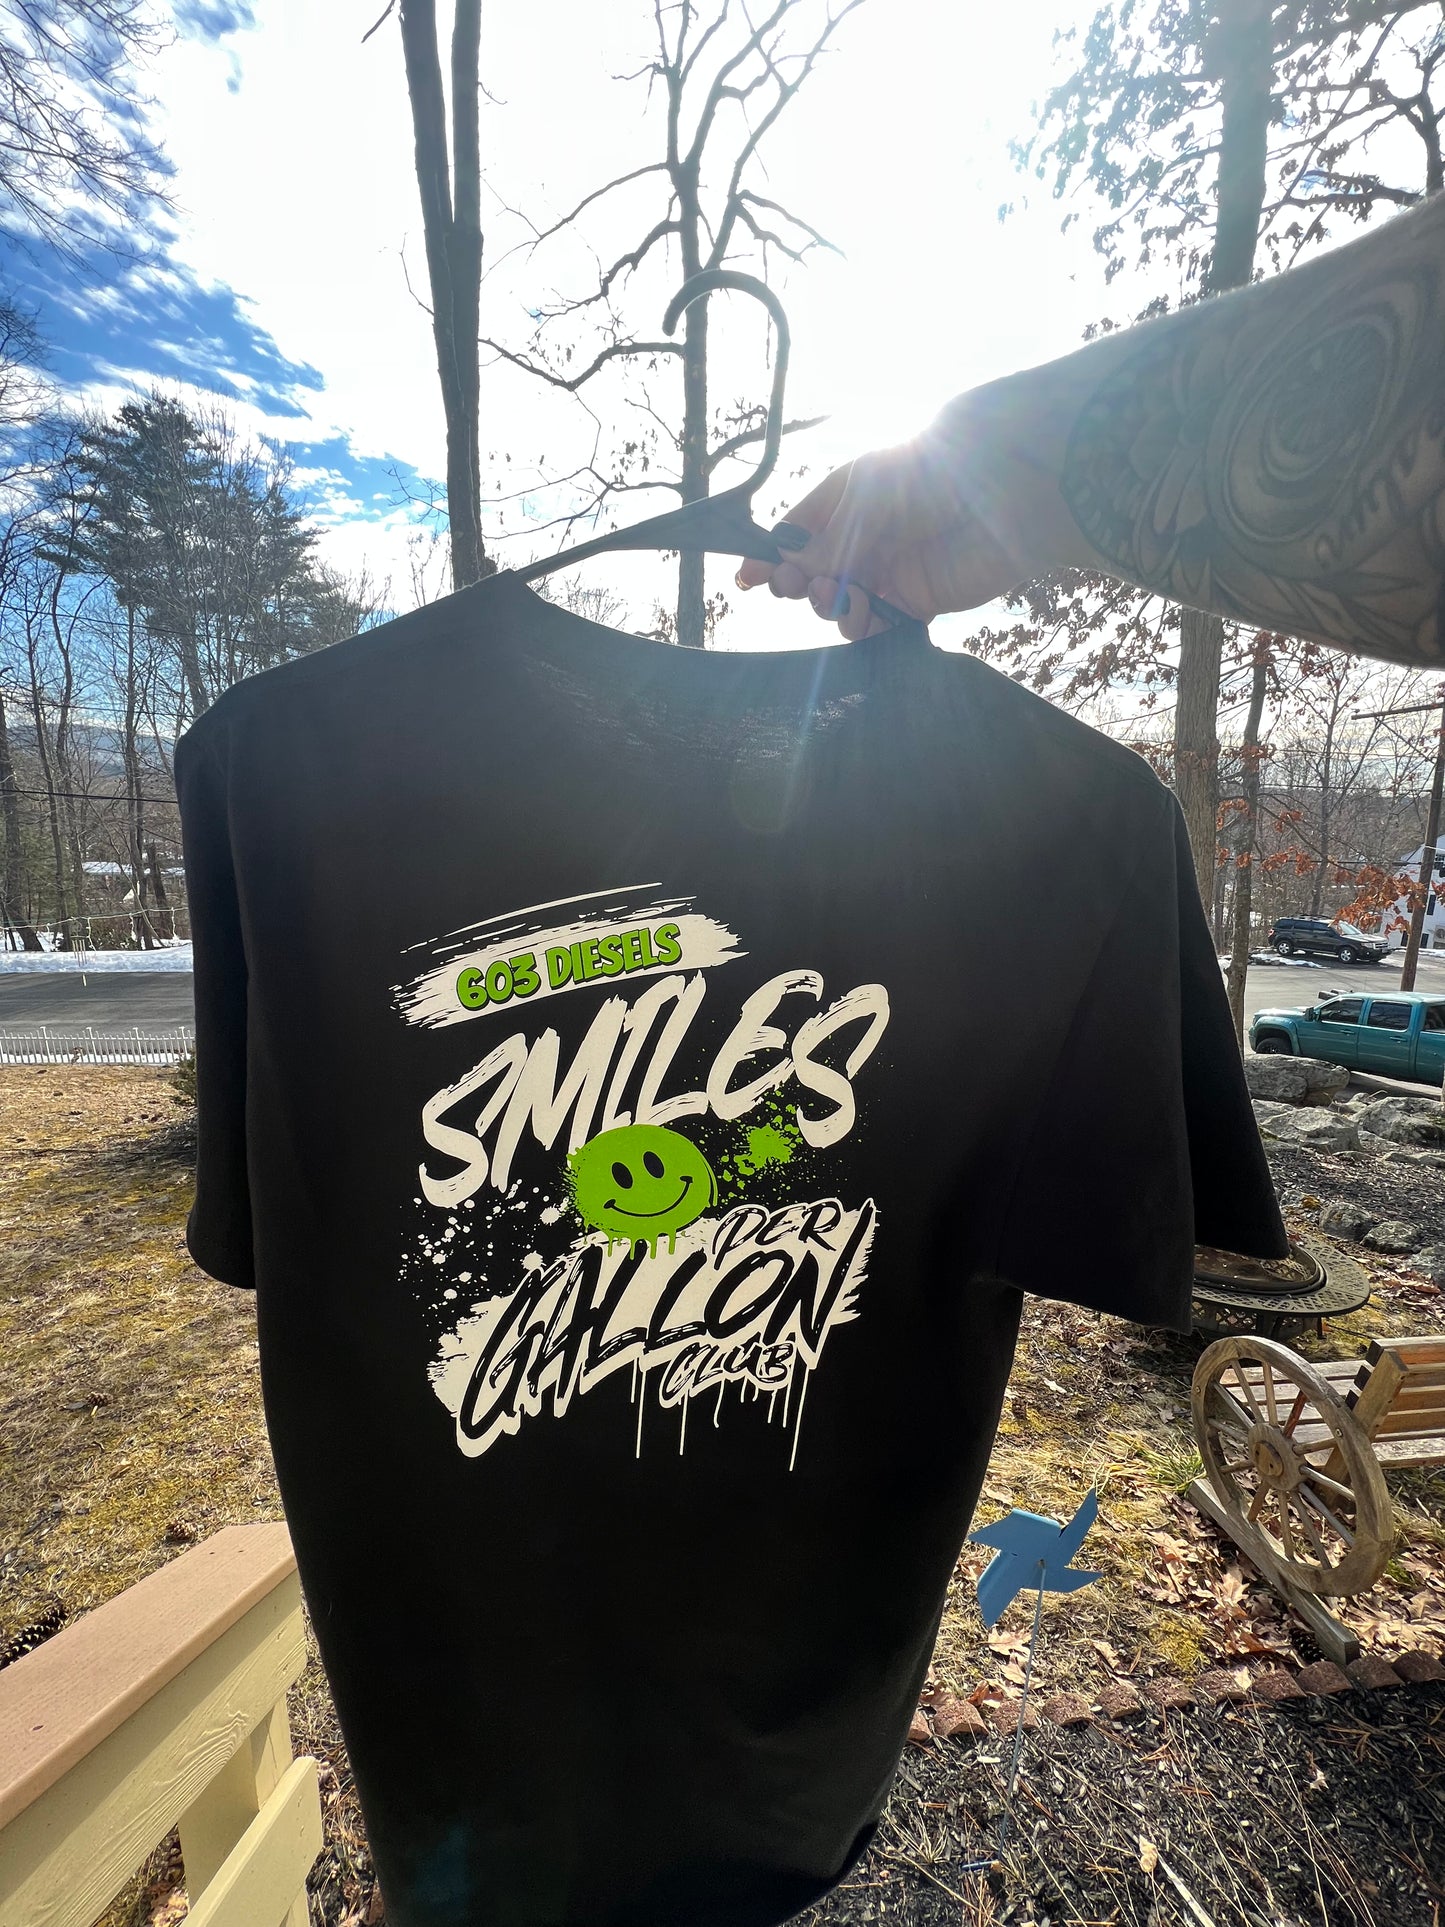 Smiles Per Gallon Club - Lime Green Tshirt